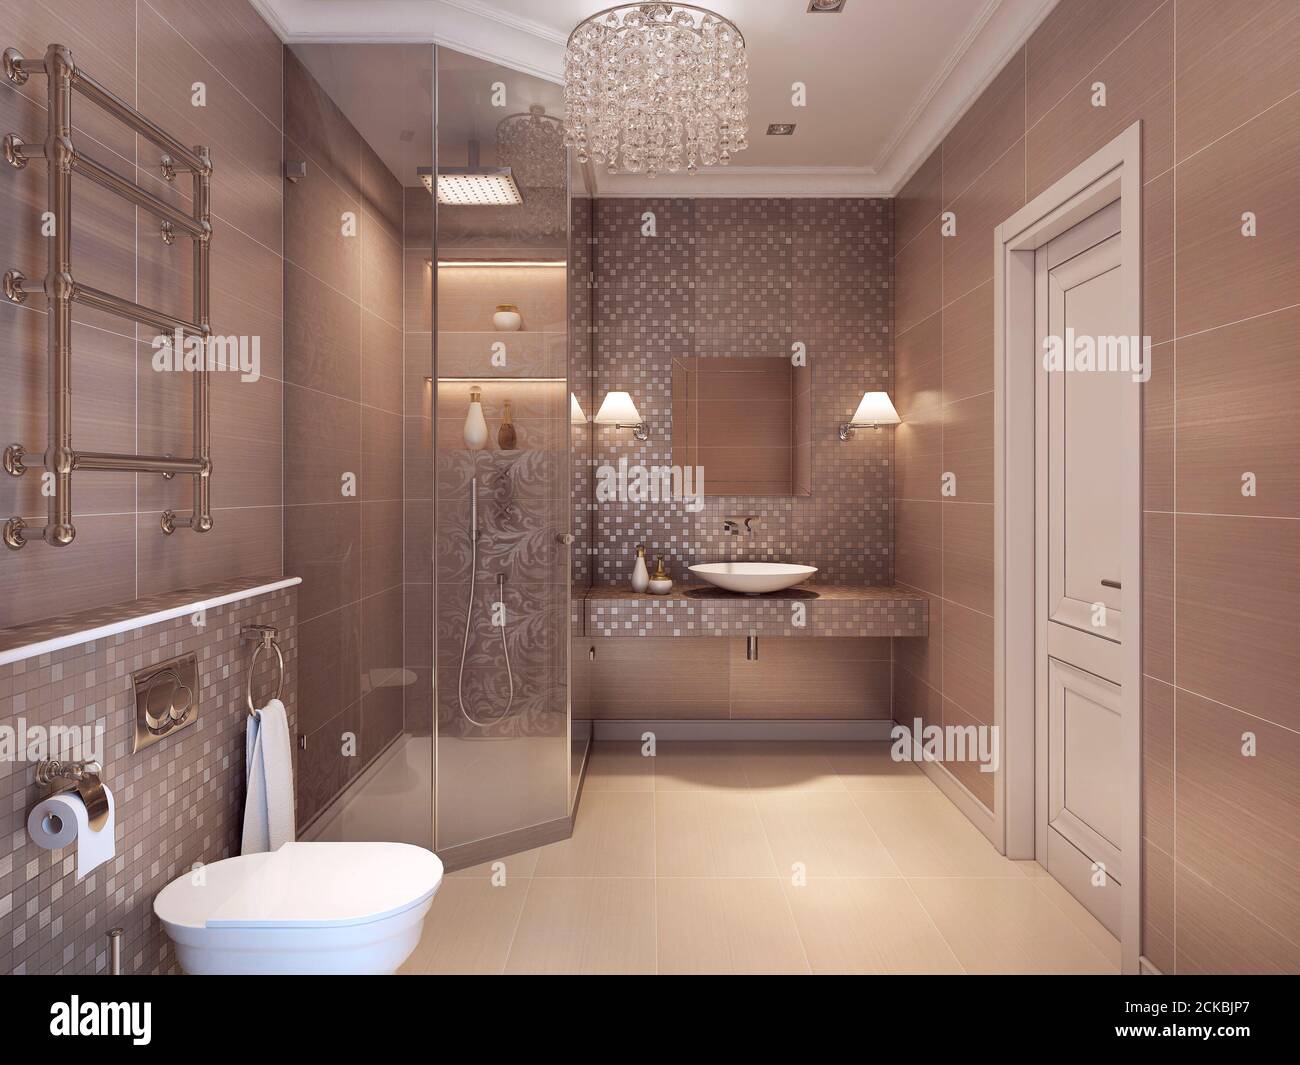 https://c8.alamy.com/compes/2ckbjp7/bano-moderno-de-estilo-art-deco-ducha-wc-y-lavamanos-renderizar-en-3d-2ckbjp7.jpg